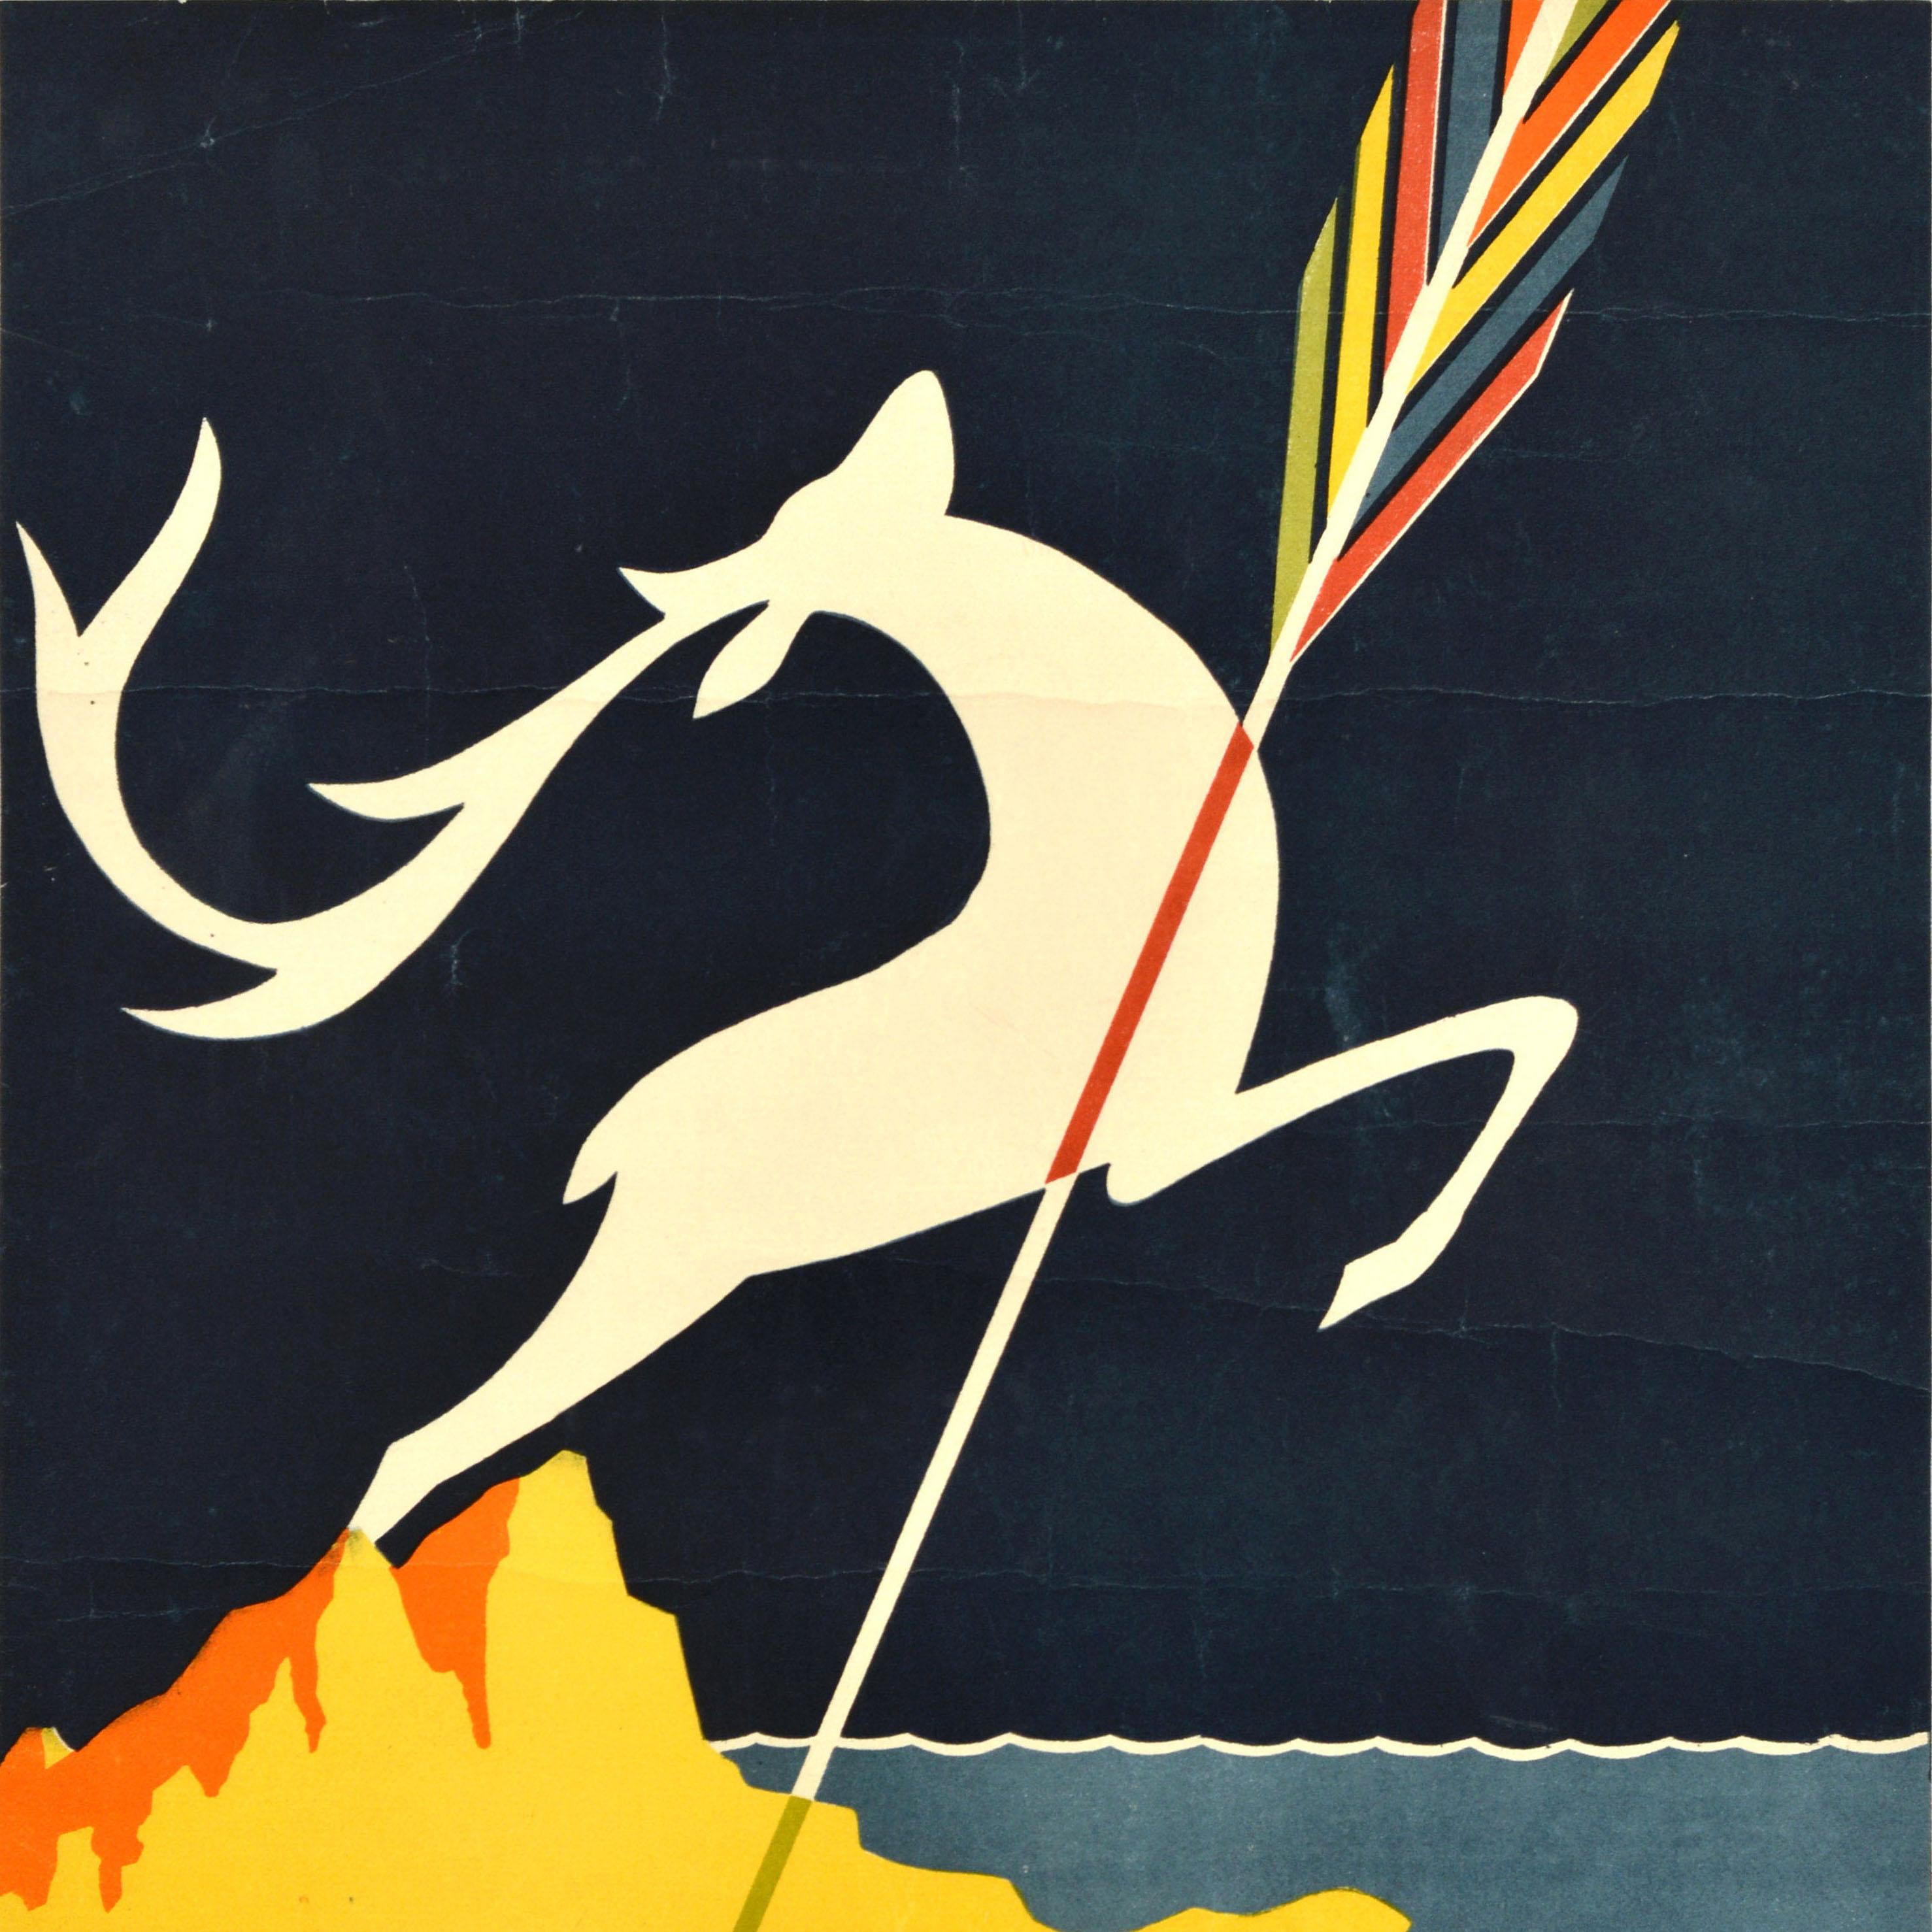 Affiche publicitaire soviétique originale d'Intourist - Hunting in Crimea Yalta - représentant une flèche colorée pointant vers la ville de villégiature de Yalta sur la mer Noire avec la forme en blanc d'un cerf sautant des montagnes de Crimée sur